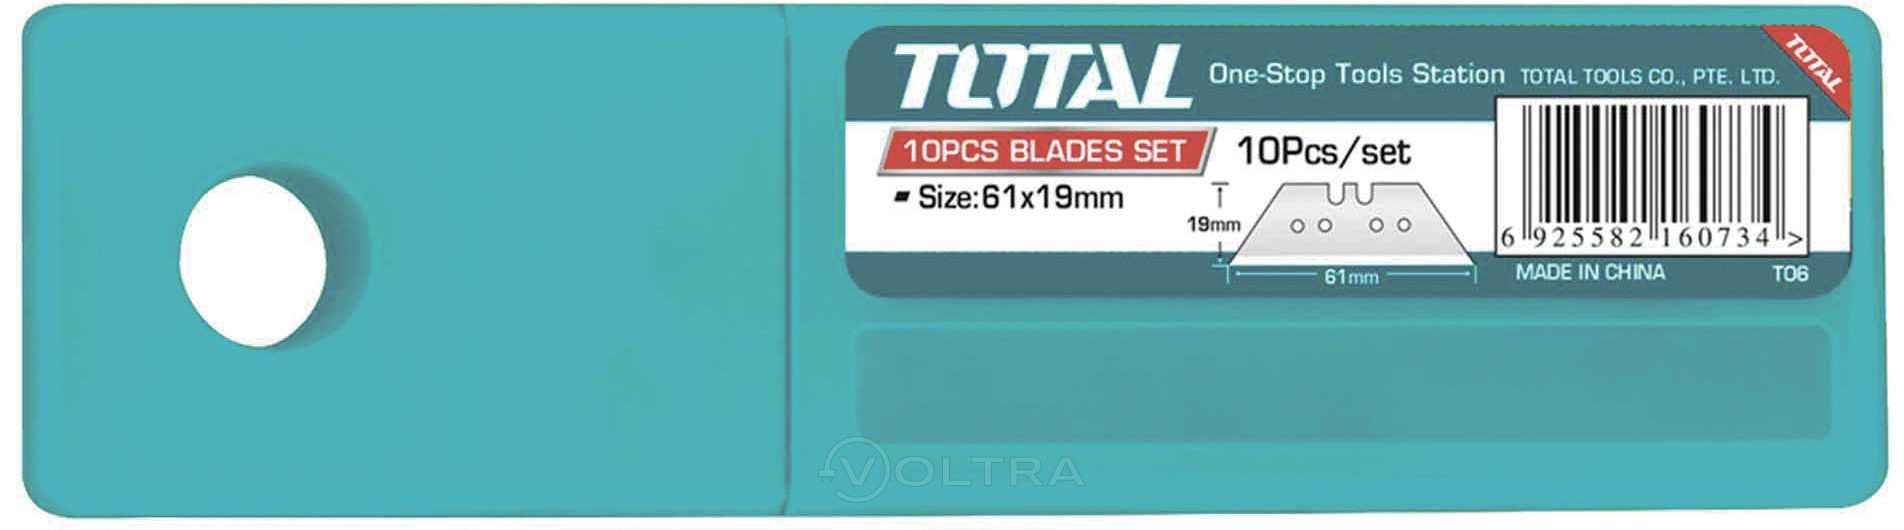 Hình ảnh 2 của mặt hàng Bộ 10 lưỡi dao tiện dụng total THT519001